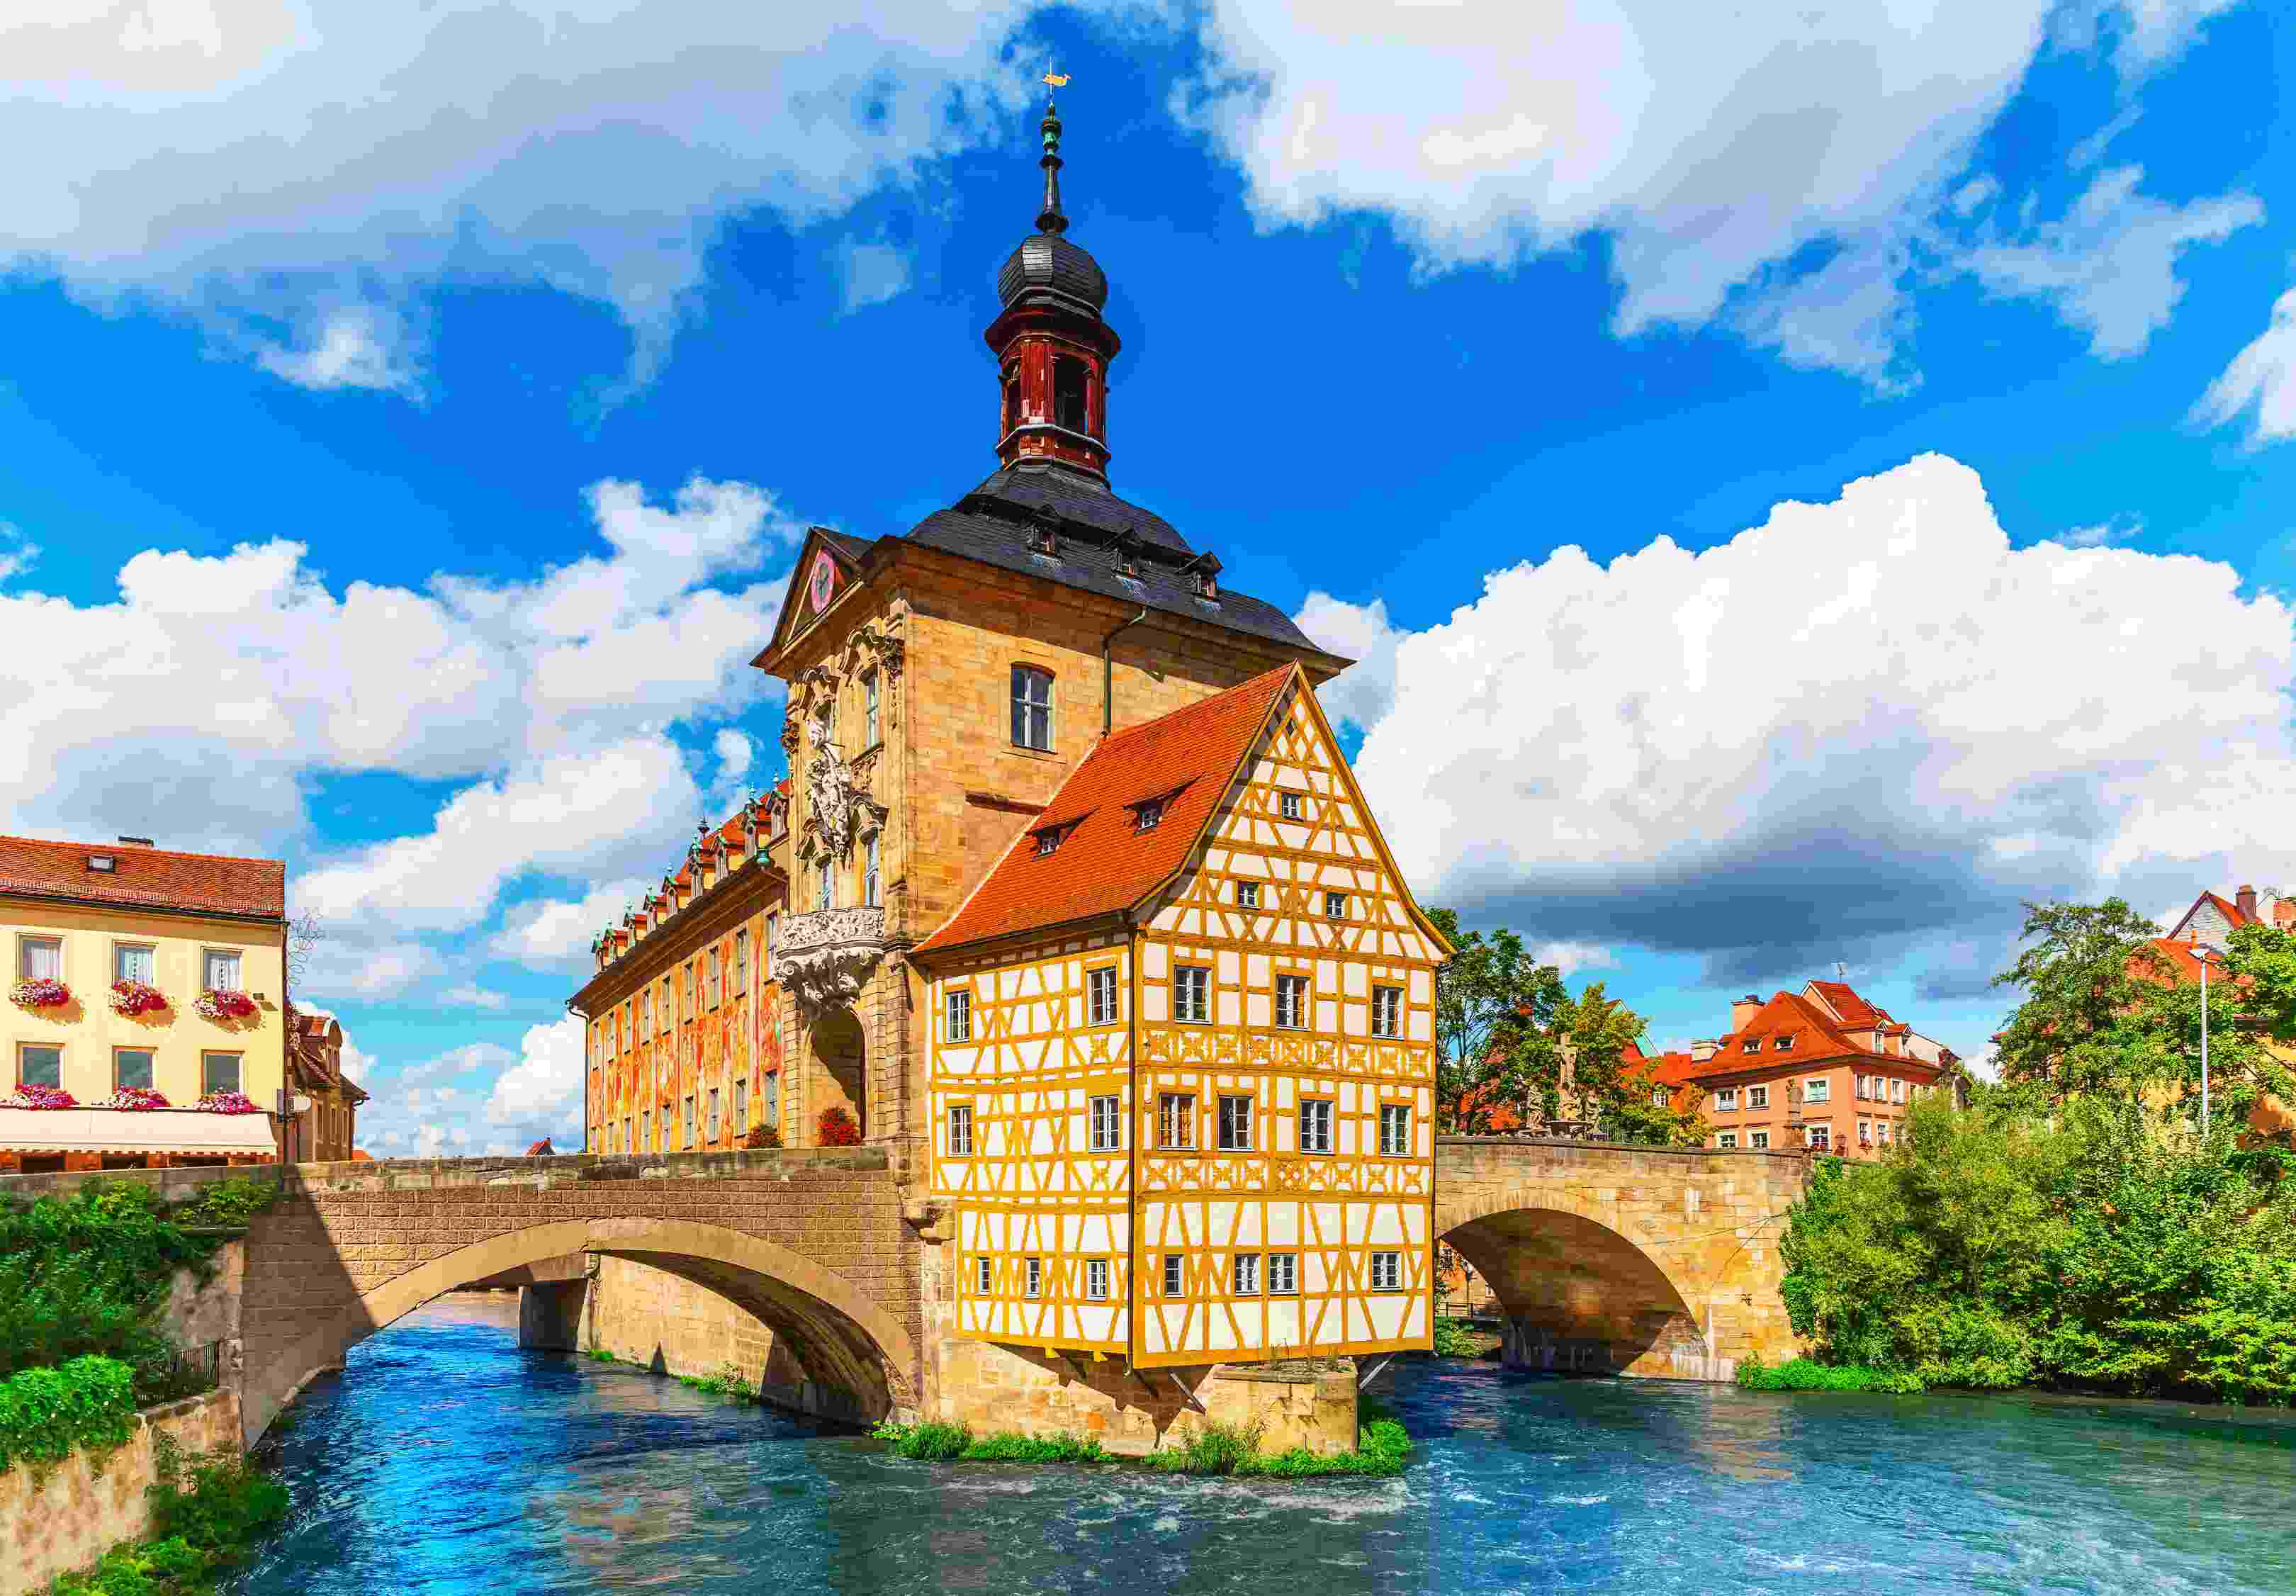 其中包含德国旅游景点介绍,美食,风景等德国旅游攻略信息